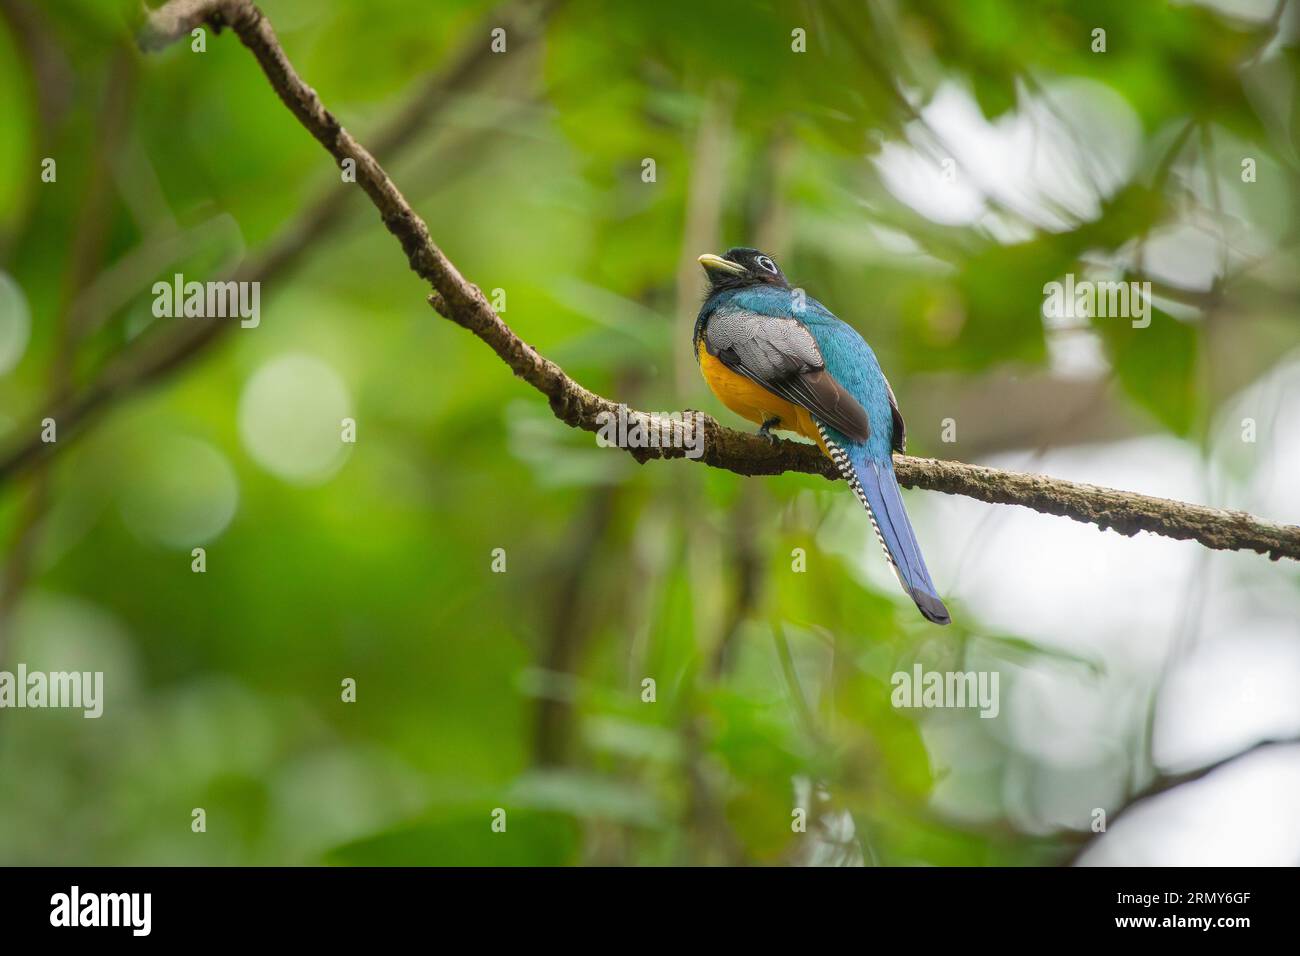 Trogón violáceo con espalda azul, vientre amarillo y cabeza negra en su hábitat natural, los bosques húmedos de Panamá y Costarica. Lindo pájaro entre la jungla Foto de stock